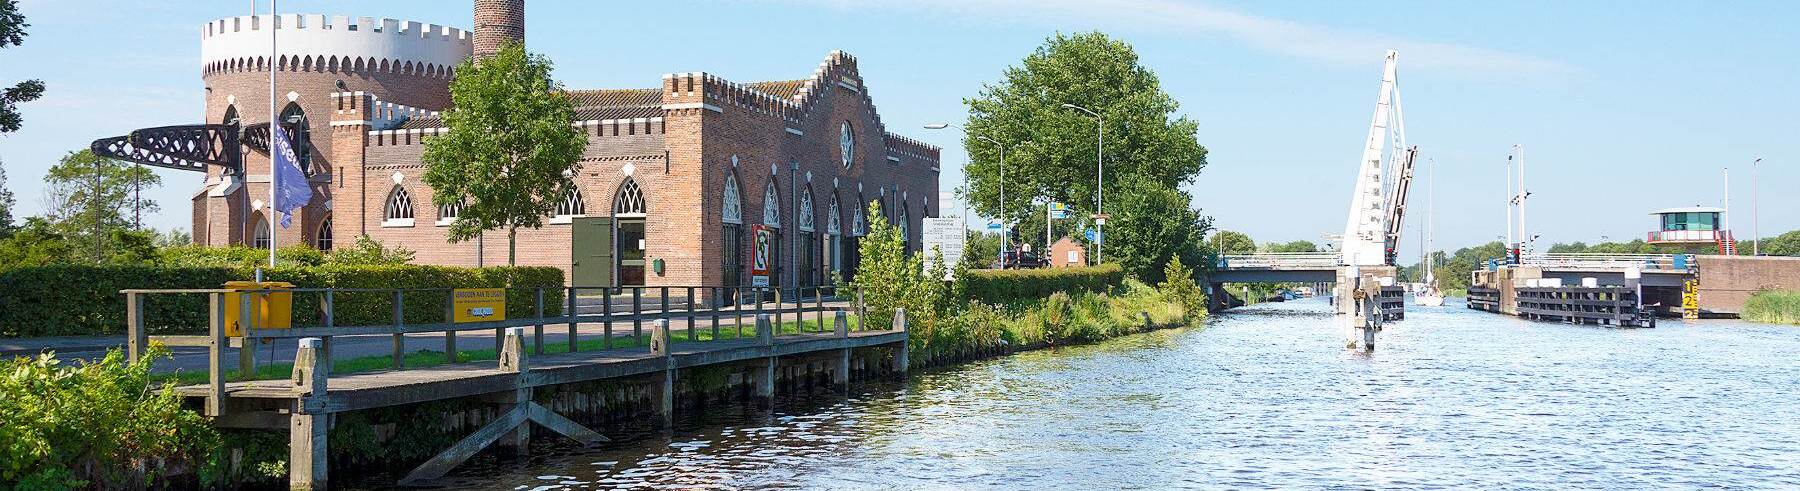 Wmo Haarlemmermeer